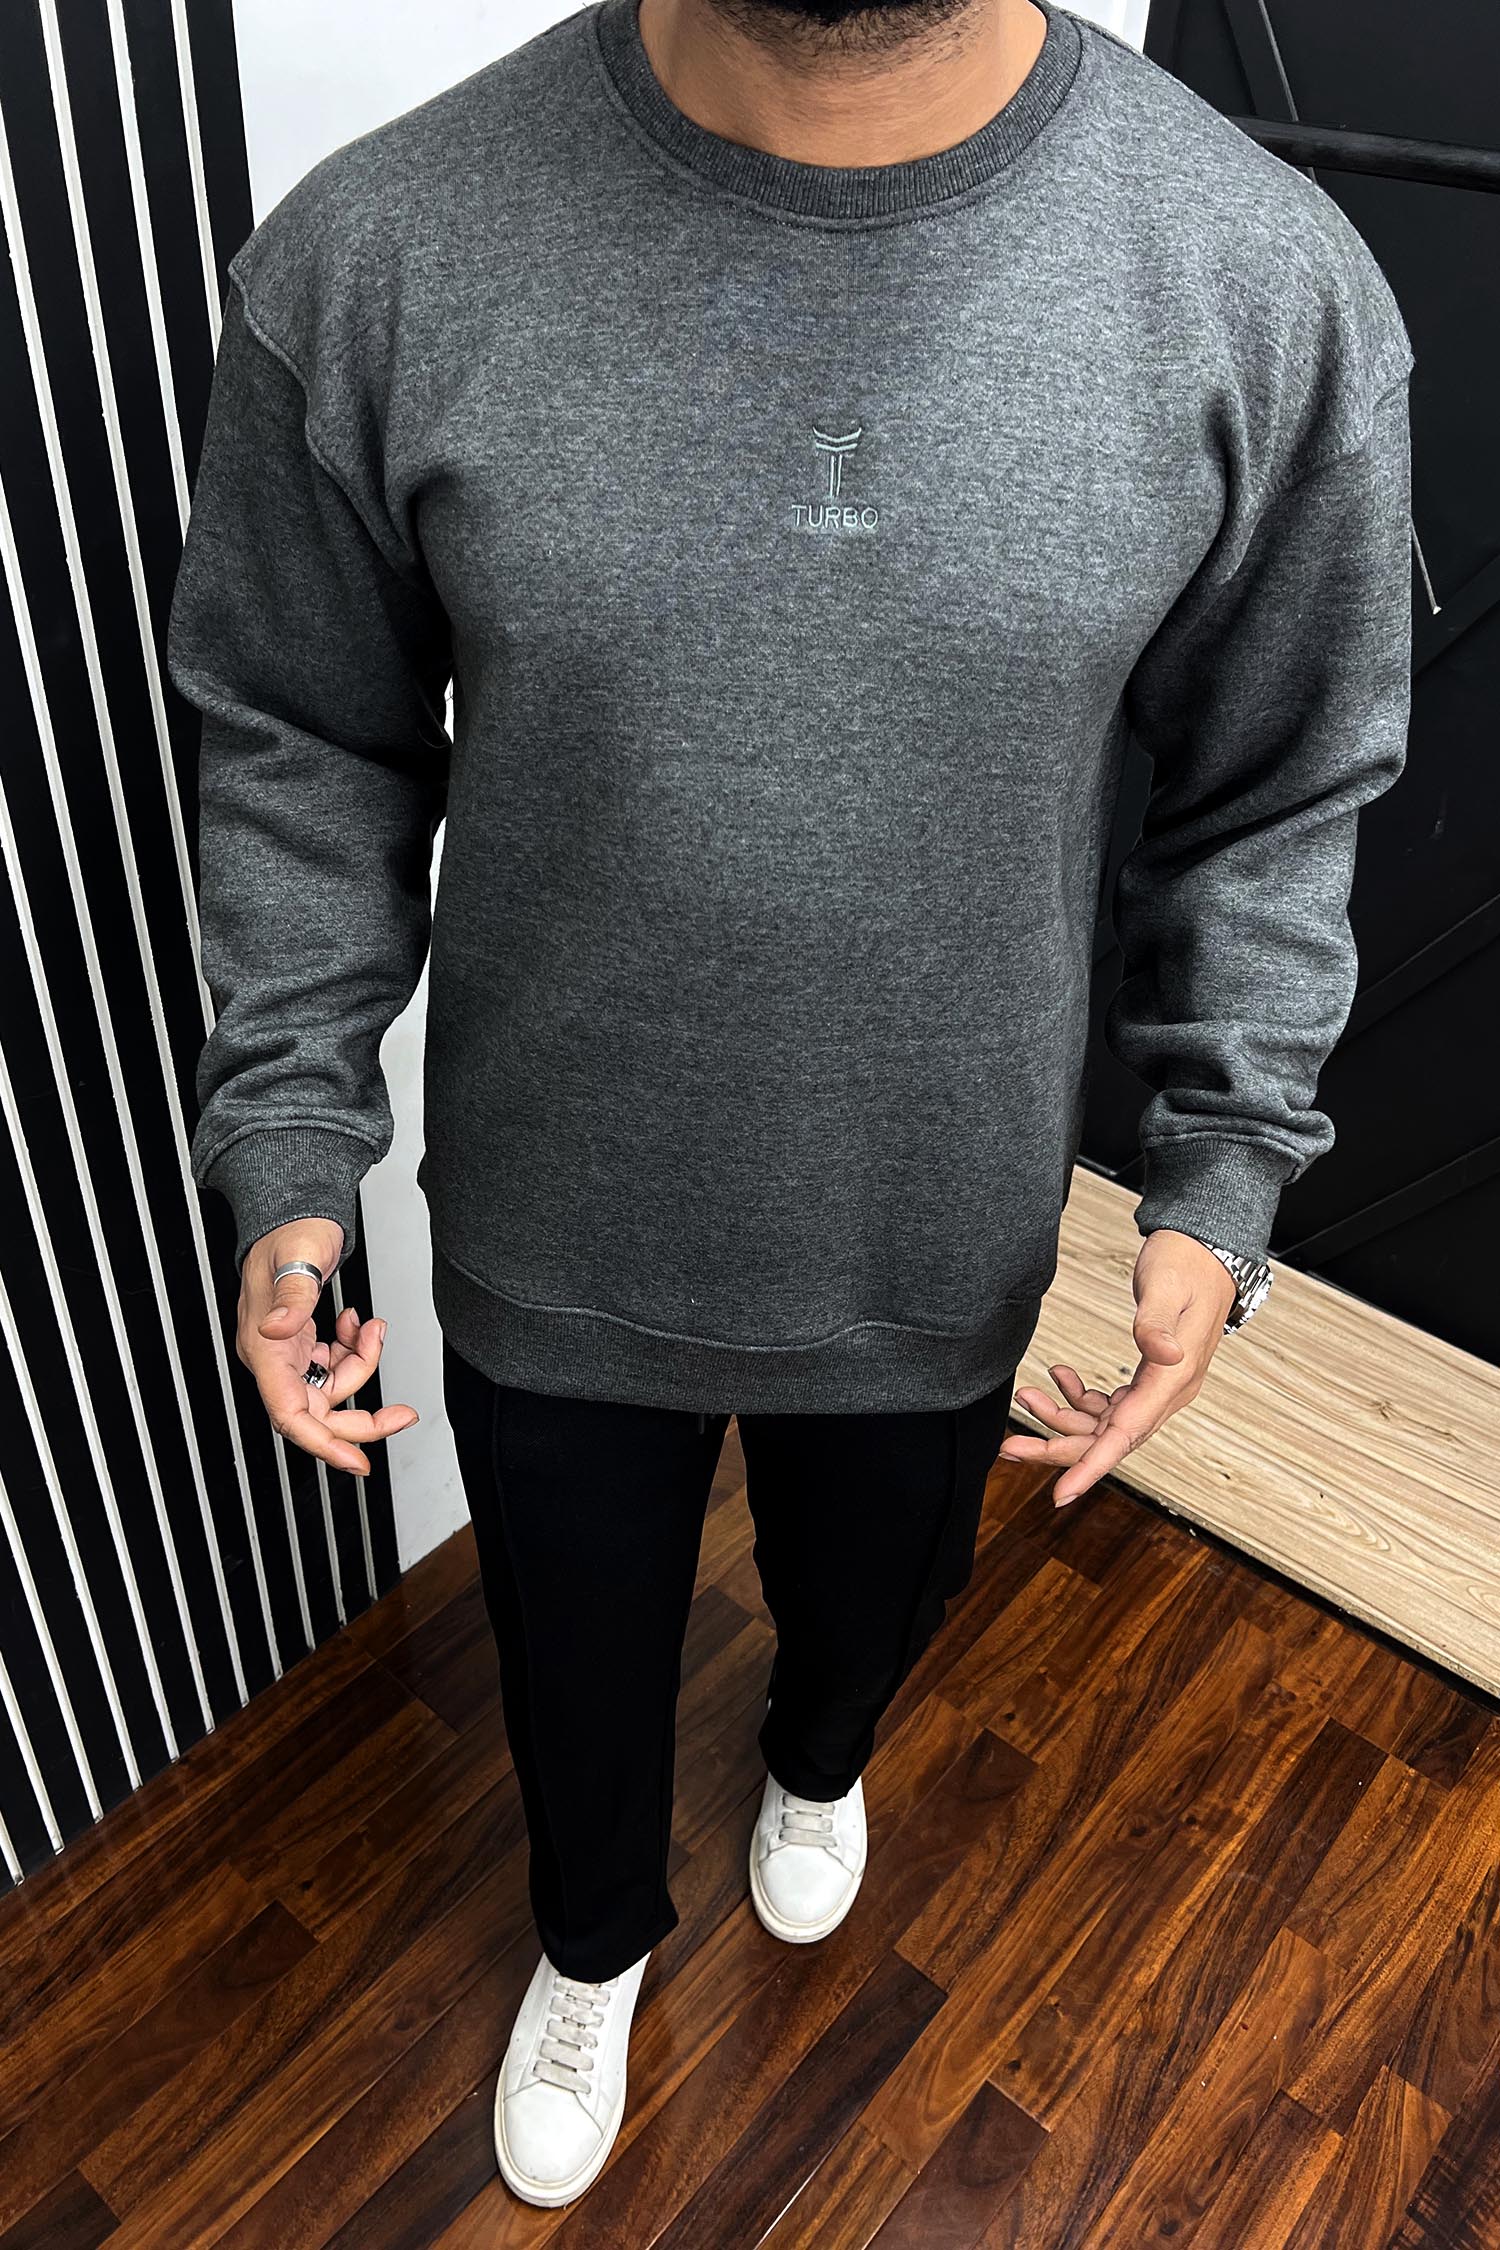 Turbo Men's Over Size Sweatshirt In Charcoal